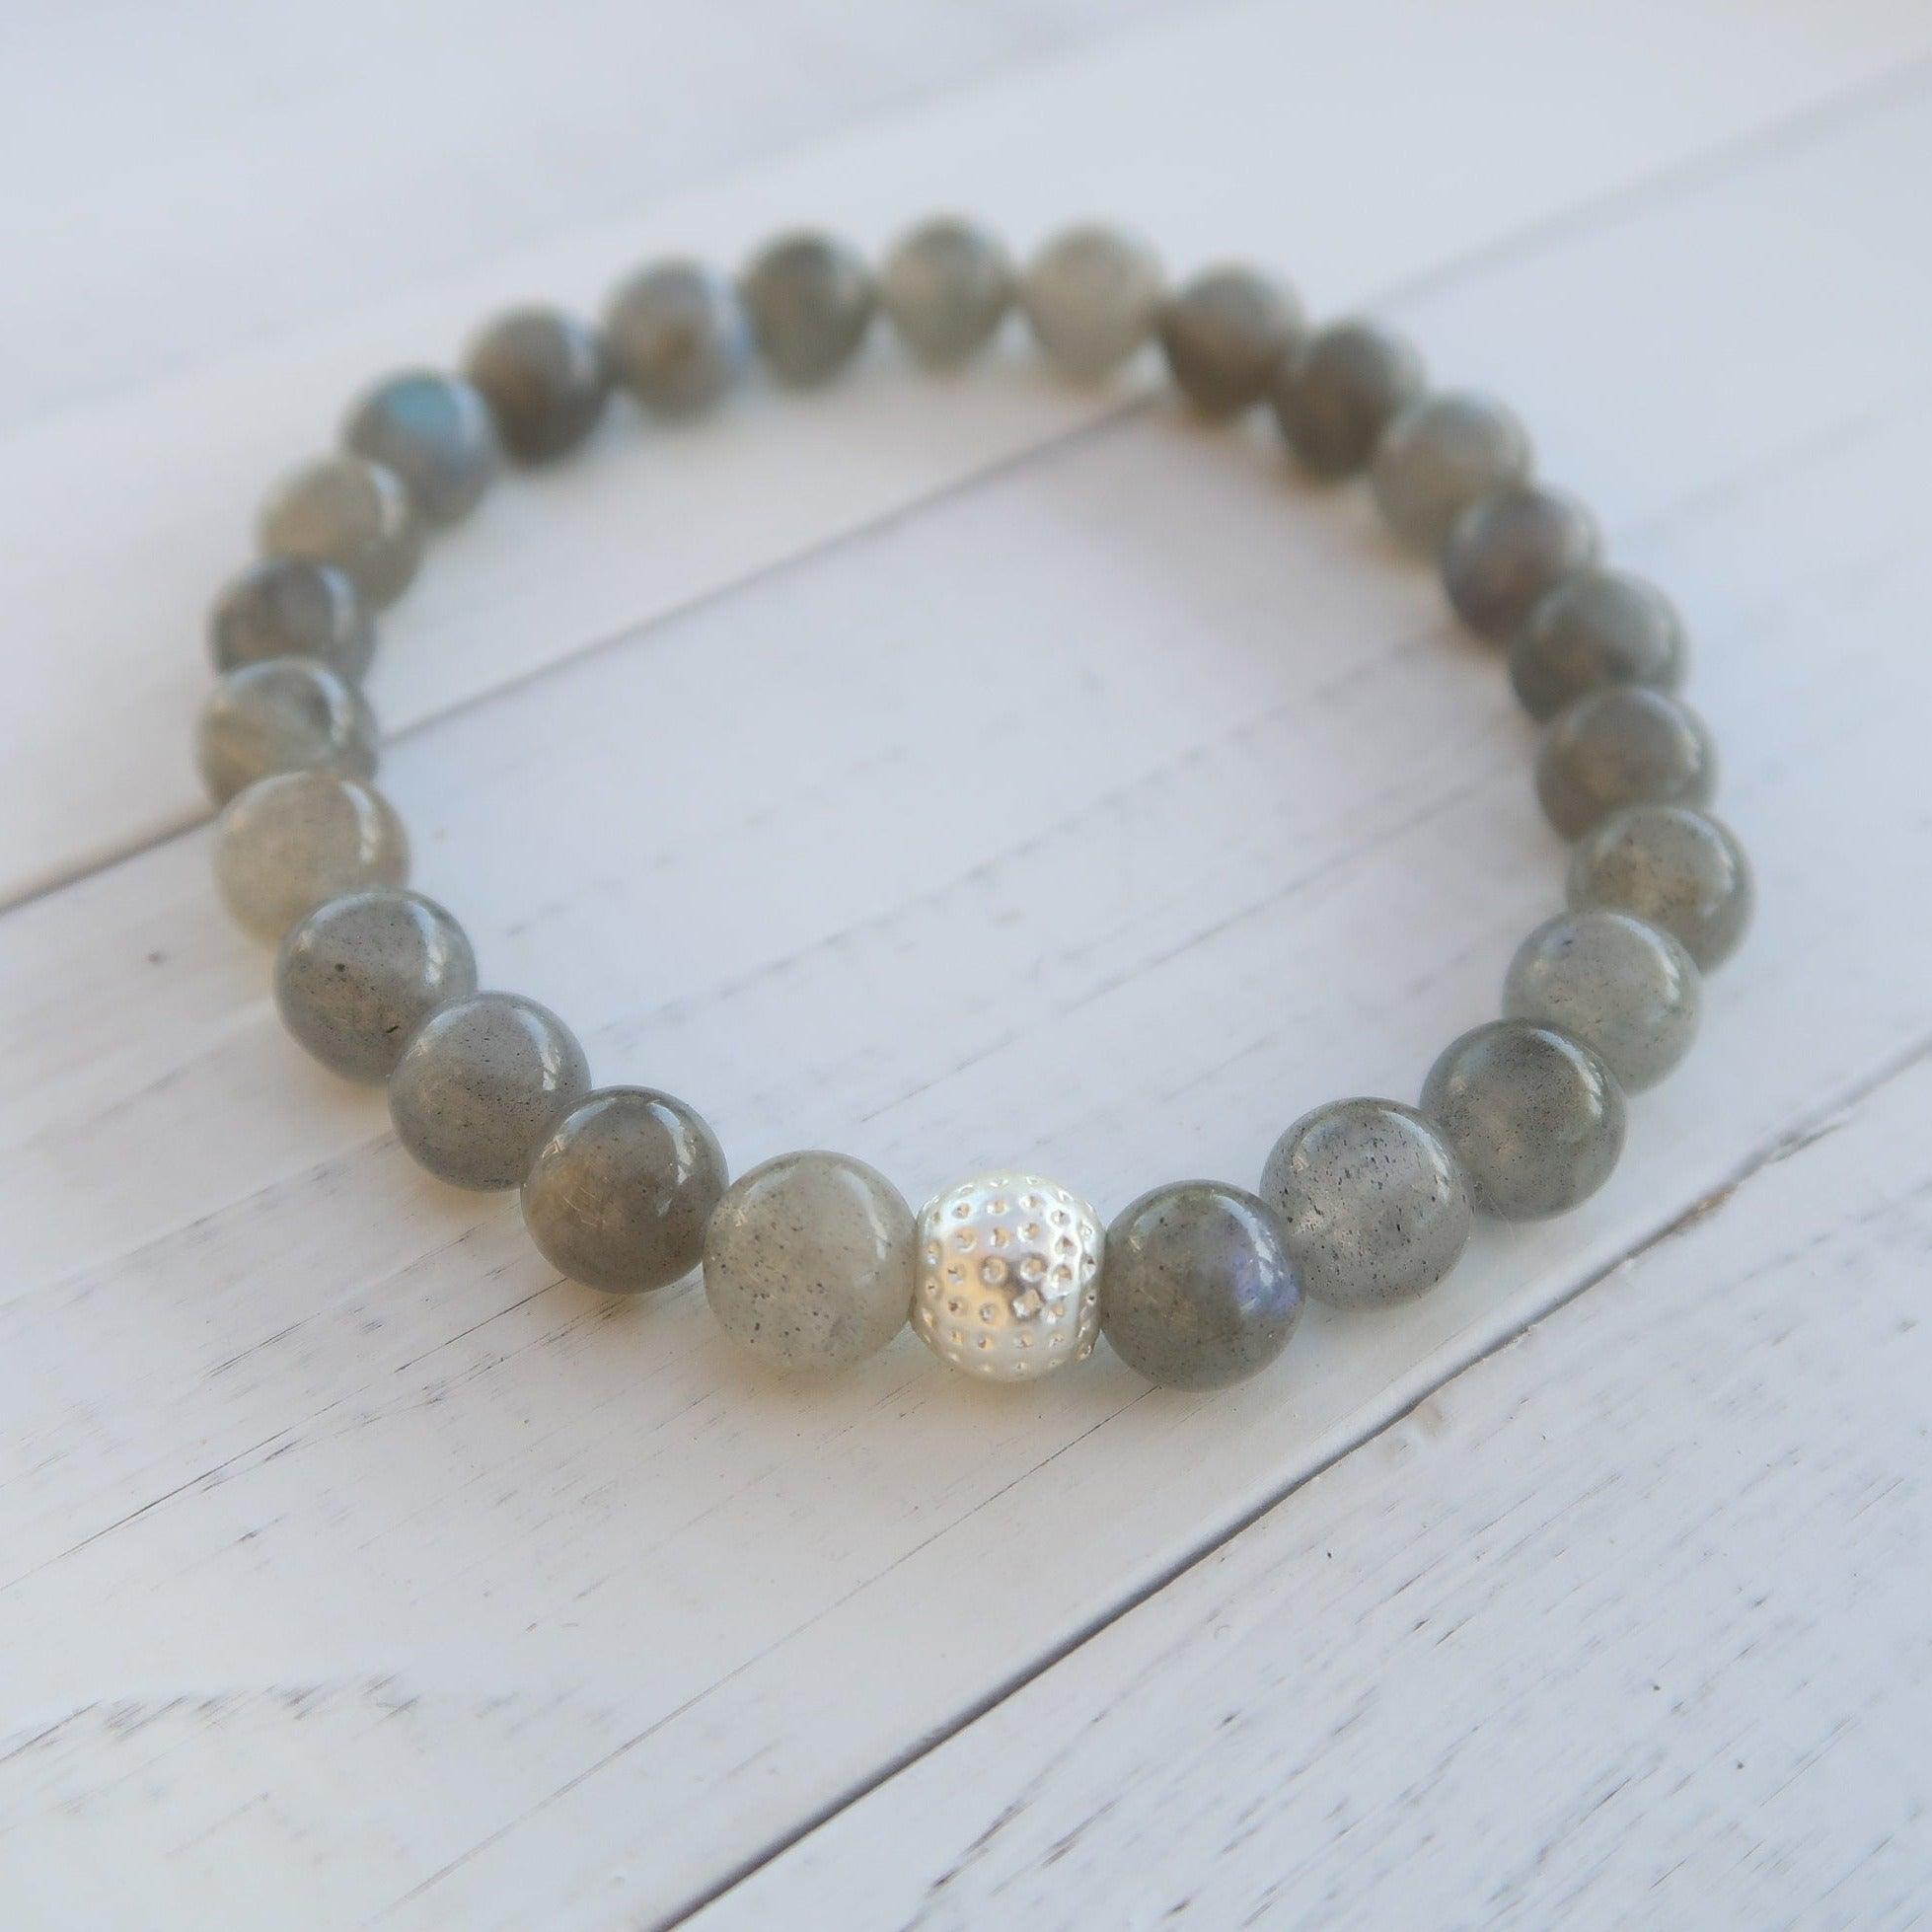 Labradorite Intuitive  Healing Gemstone Bracelet With Reiki Energy - 3Rosebudsco.com